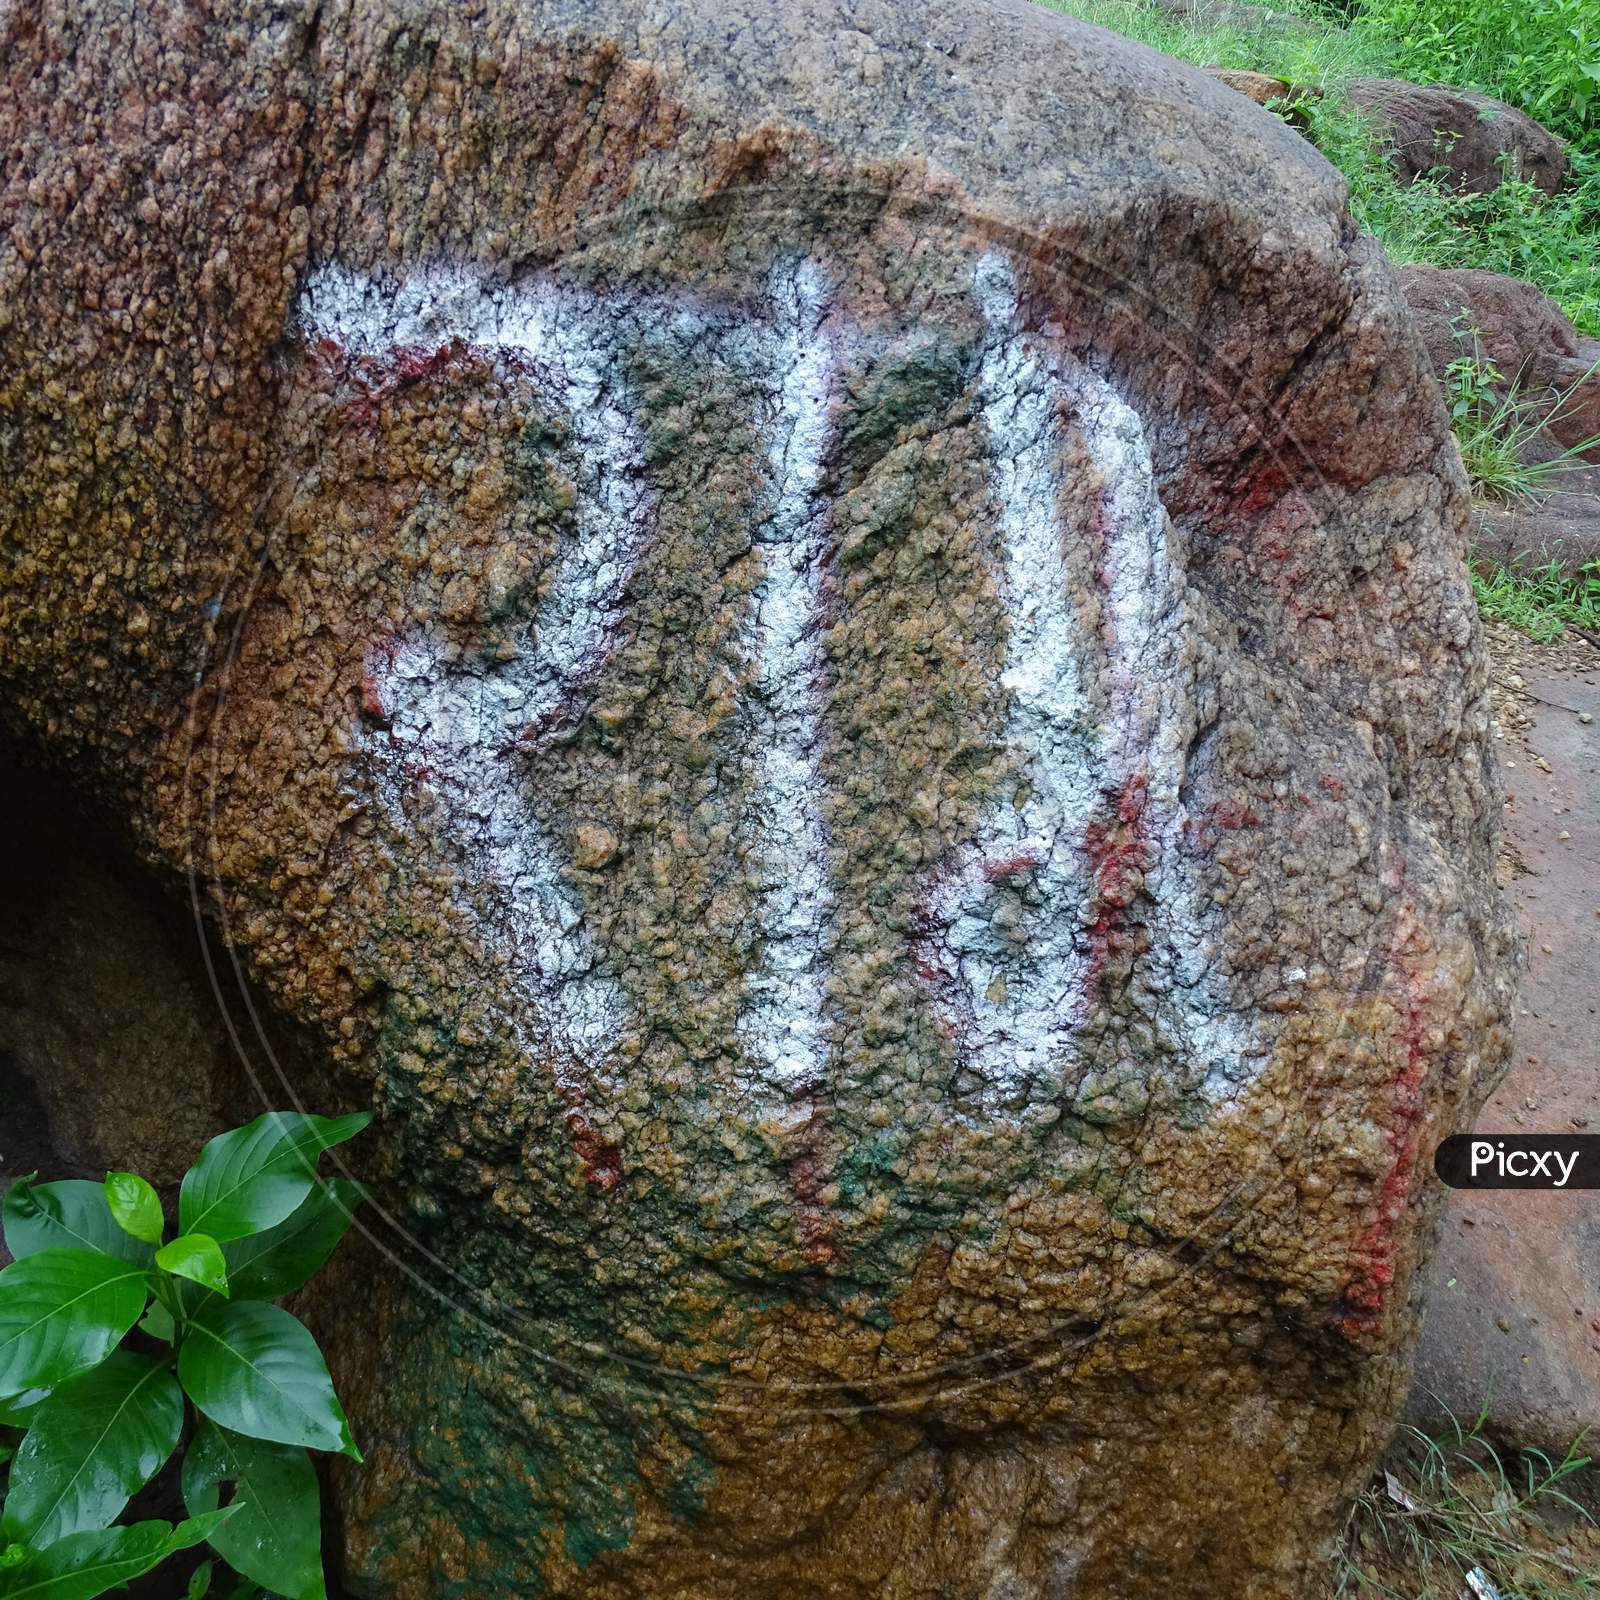 lord rama (hindu god) name written on the stone